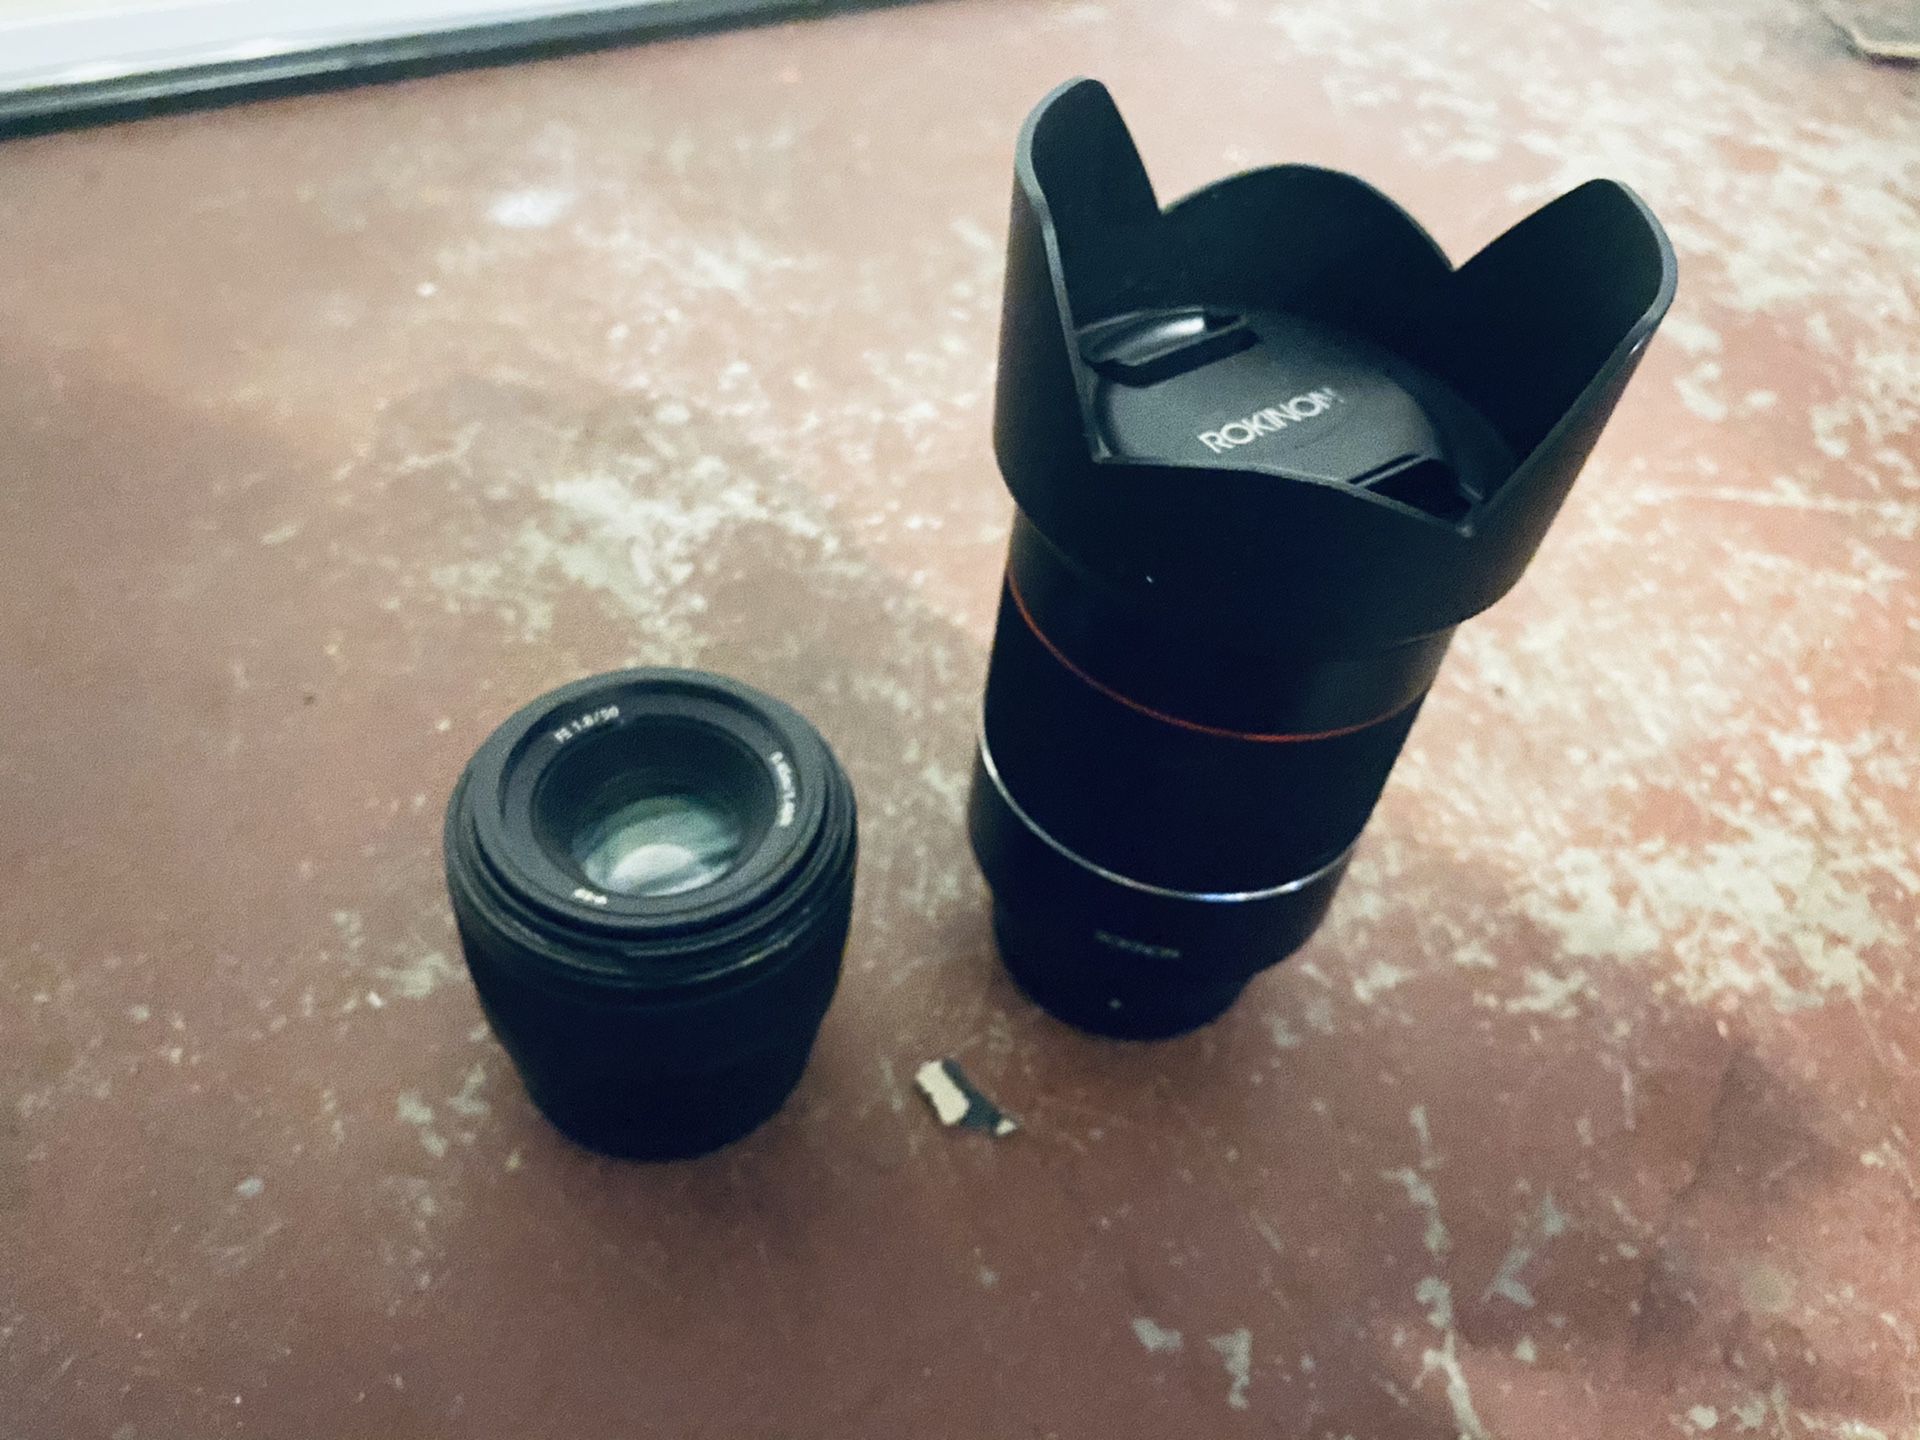 Sony and Rokinon Camera Lens